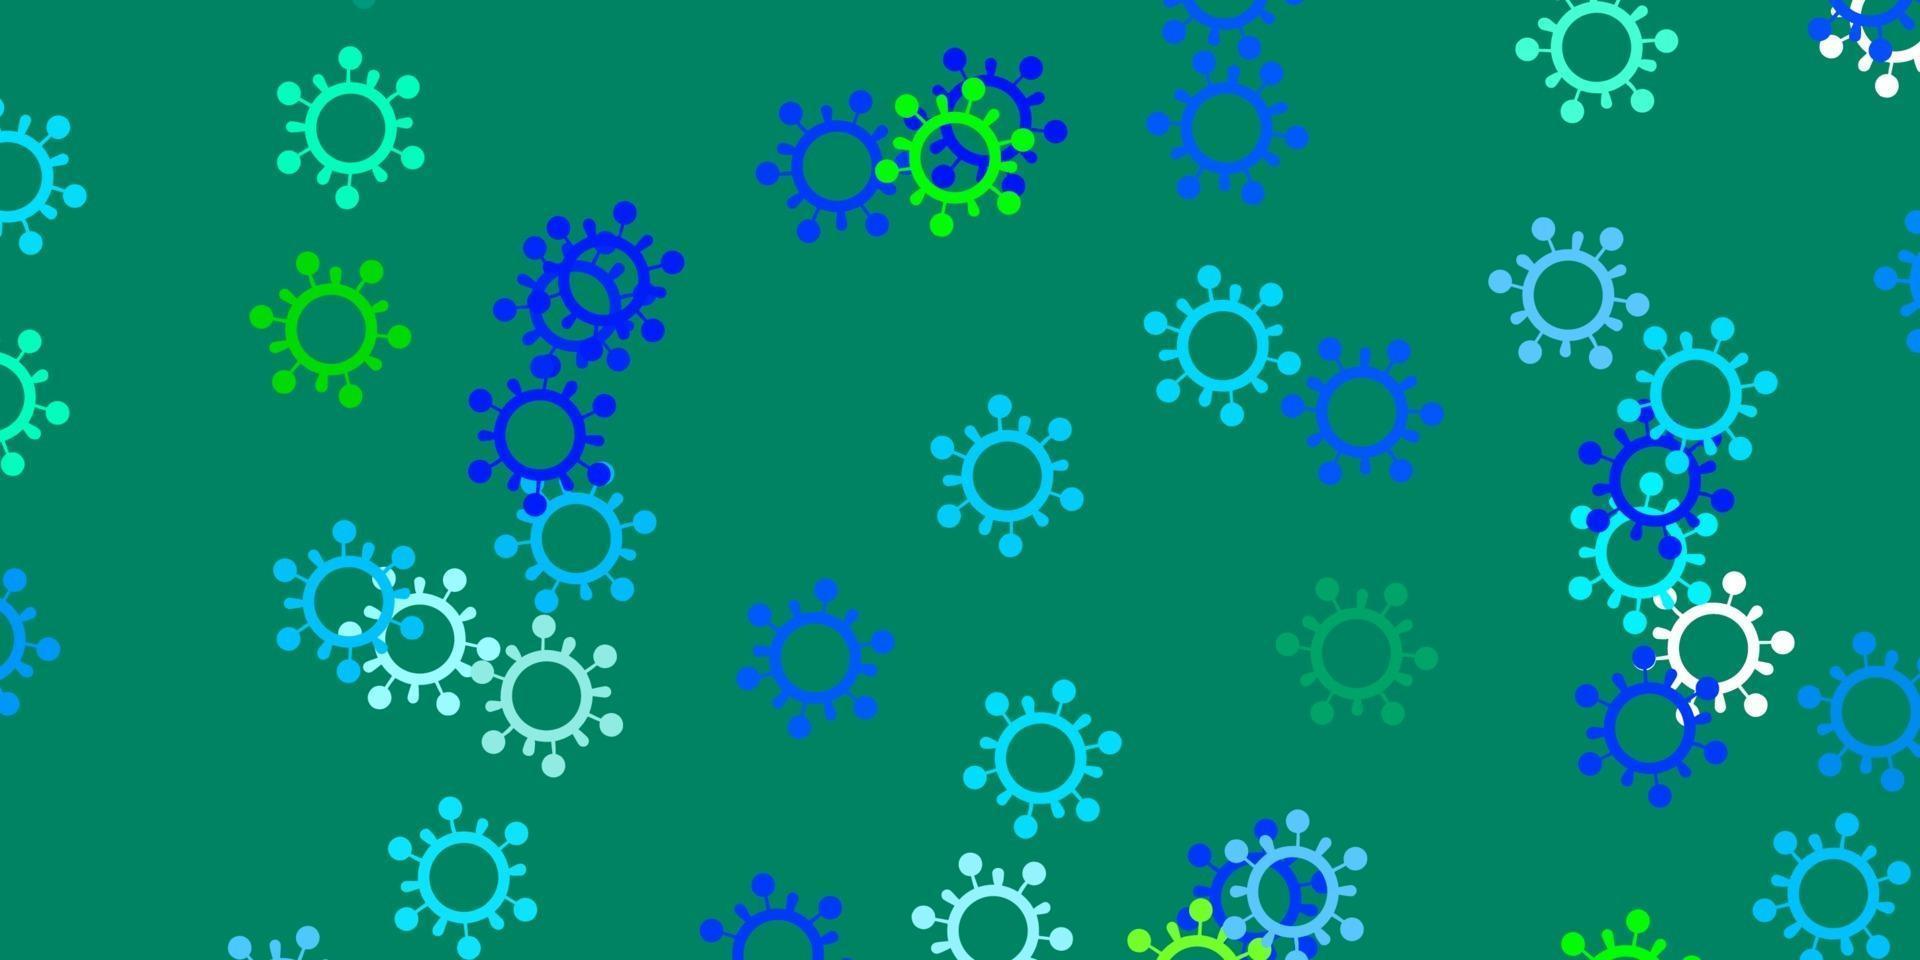 modèle vectoriel bleu clair et vert avec des signes de grippe.